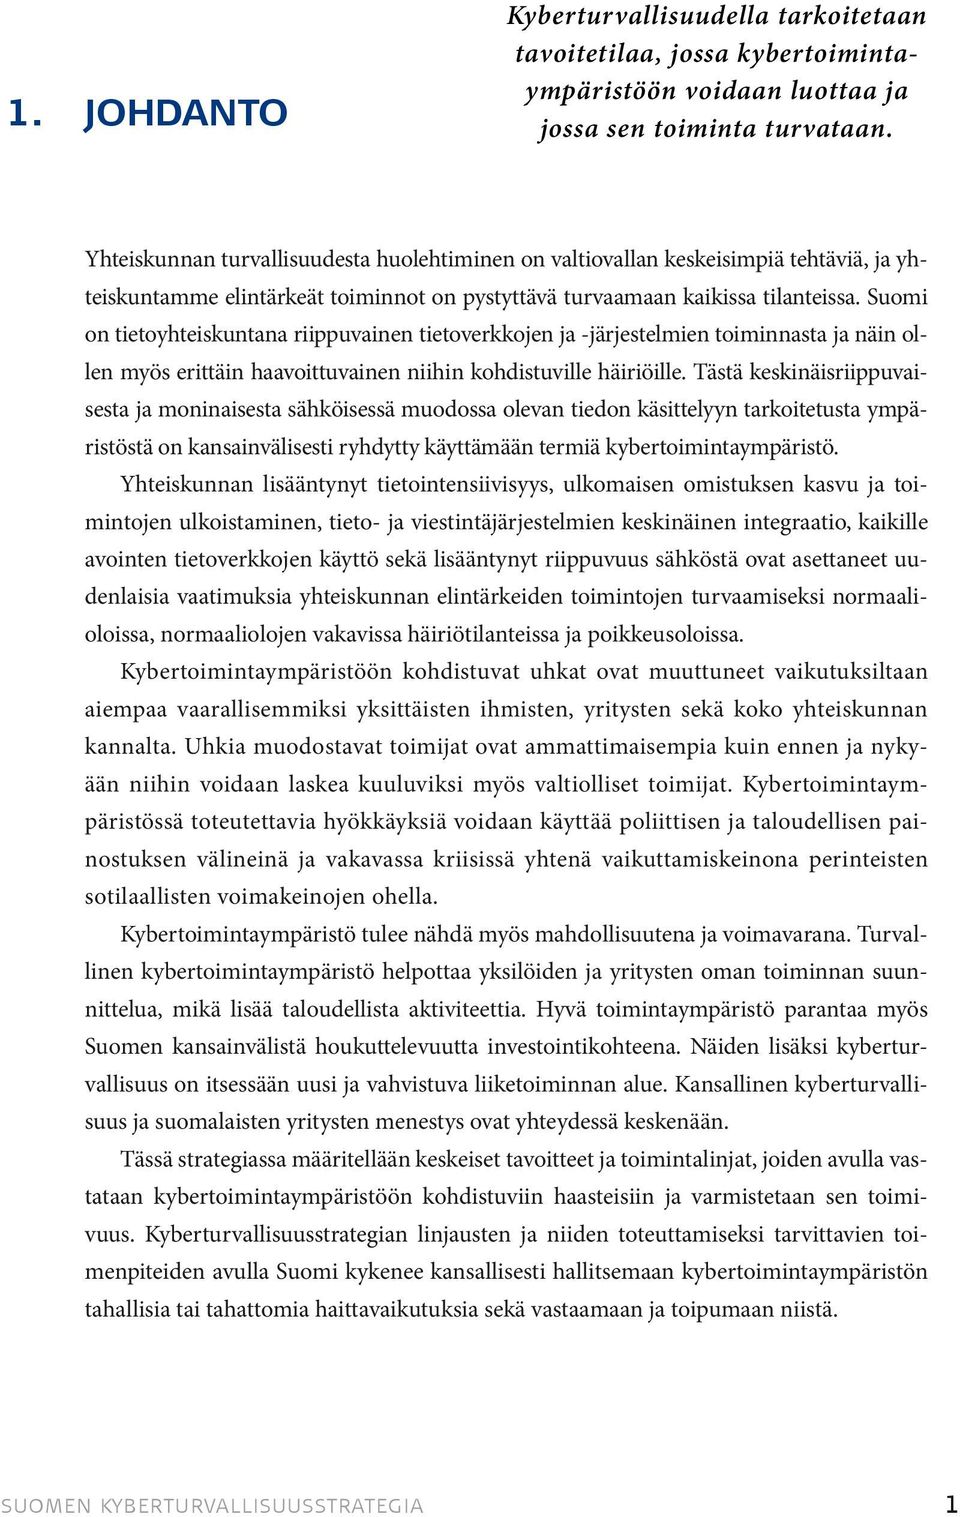 Suomi on tietoyhteiskuntana riippuvainen tietoverkkojen ja -järjestelmien toiminnasta ja näin ollen myös erittäin haavoittuvainen niihin kohdistuville häiriöille.